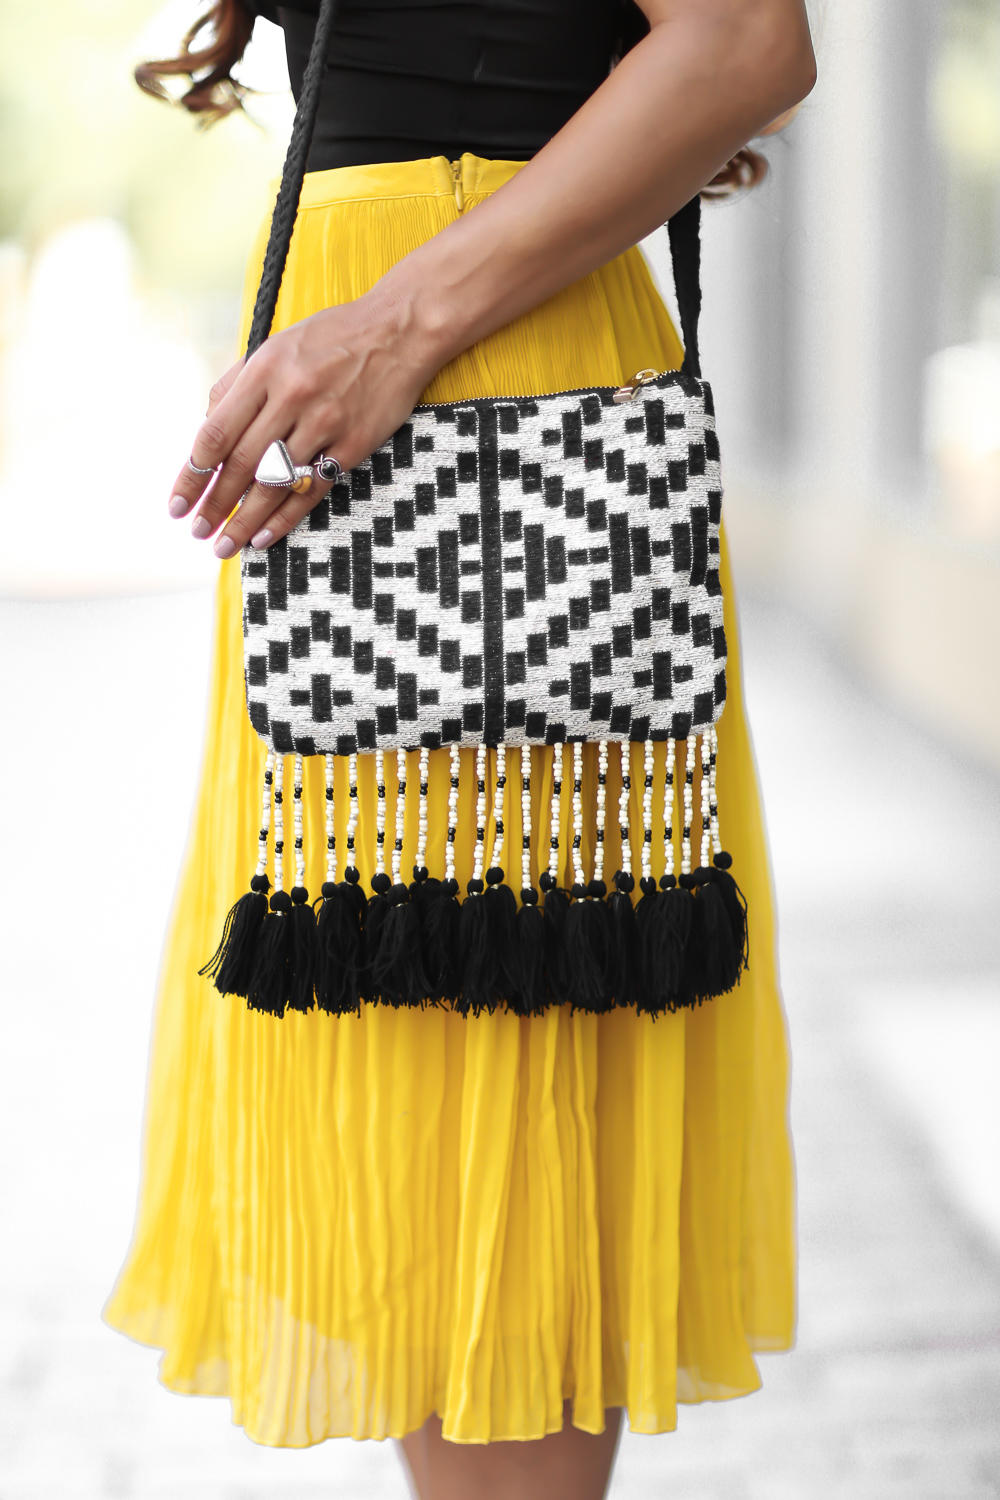 zara yellow pleated skirt